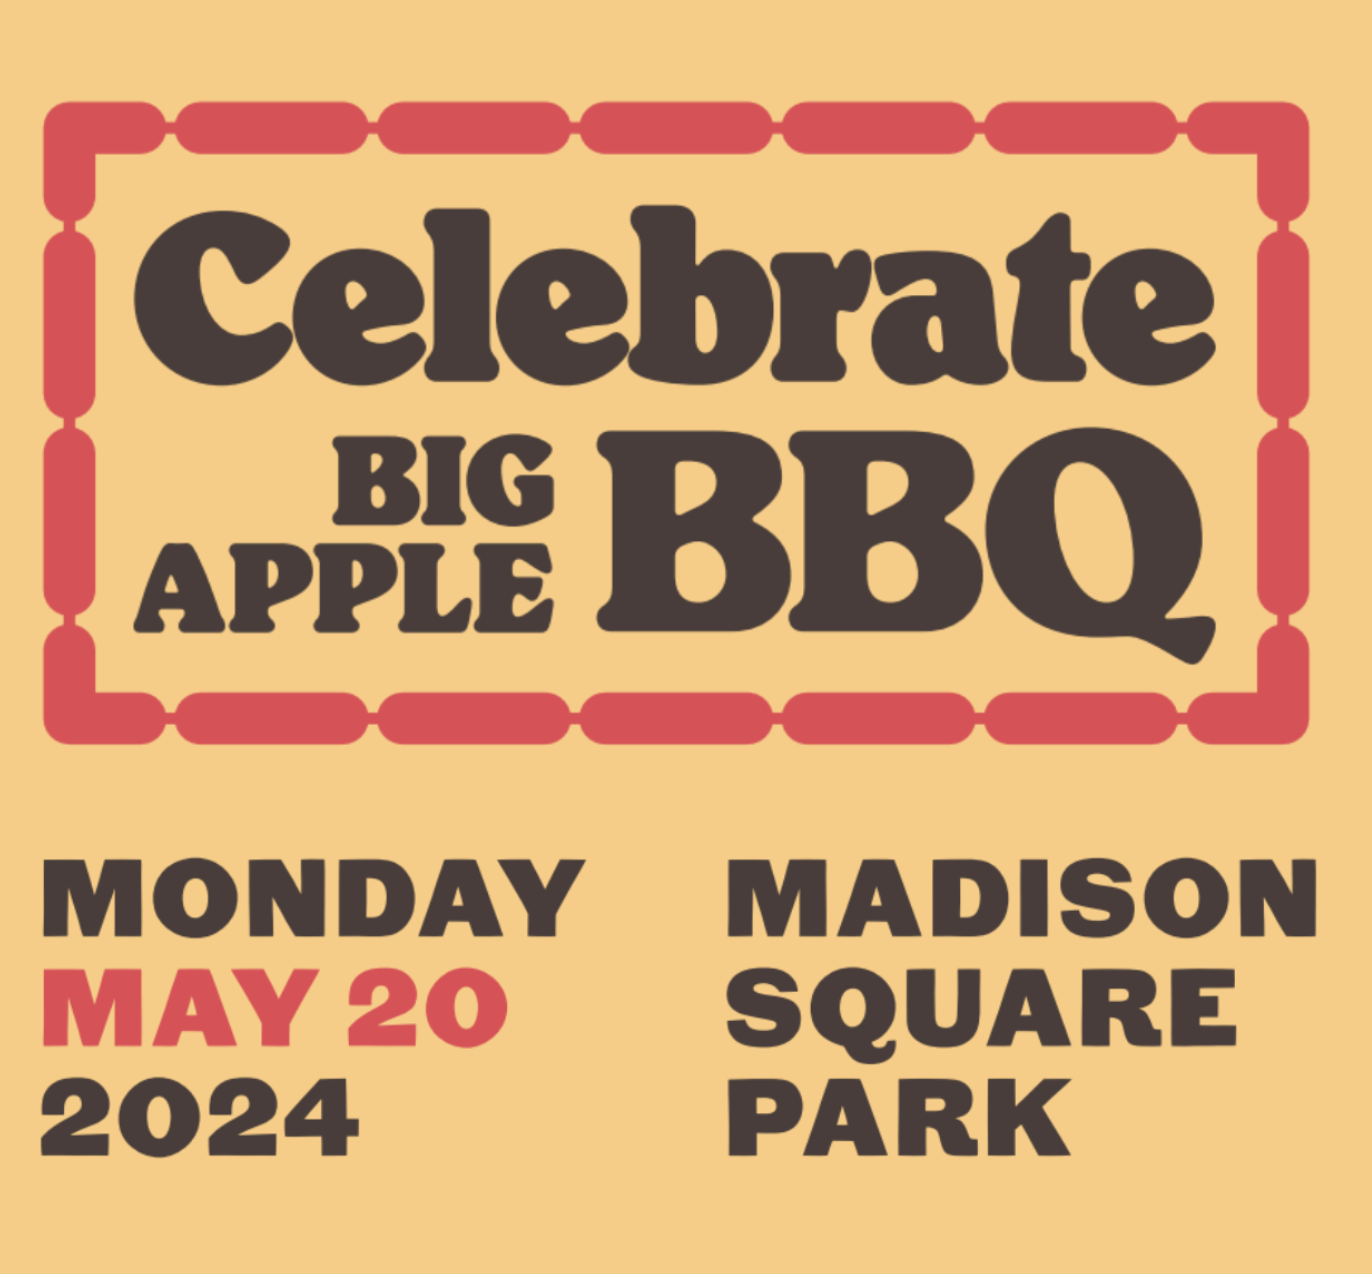 Celebrate Big Apple BBQ